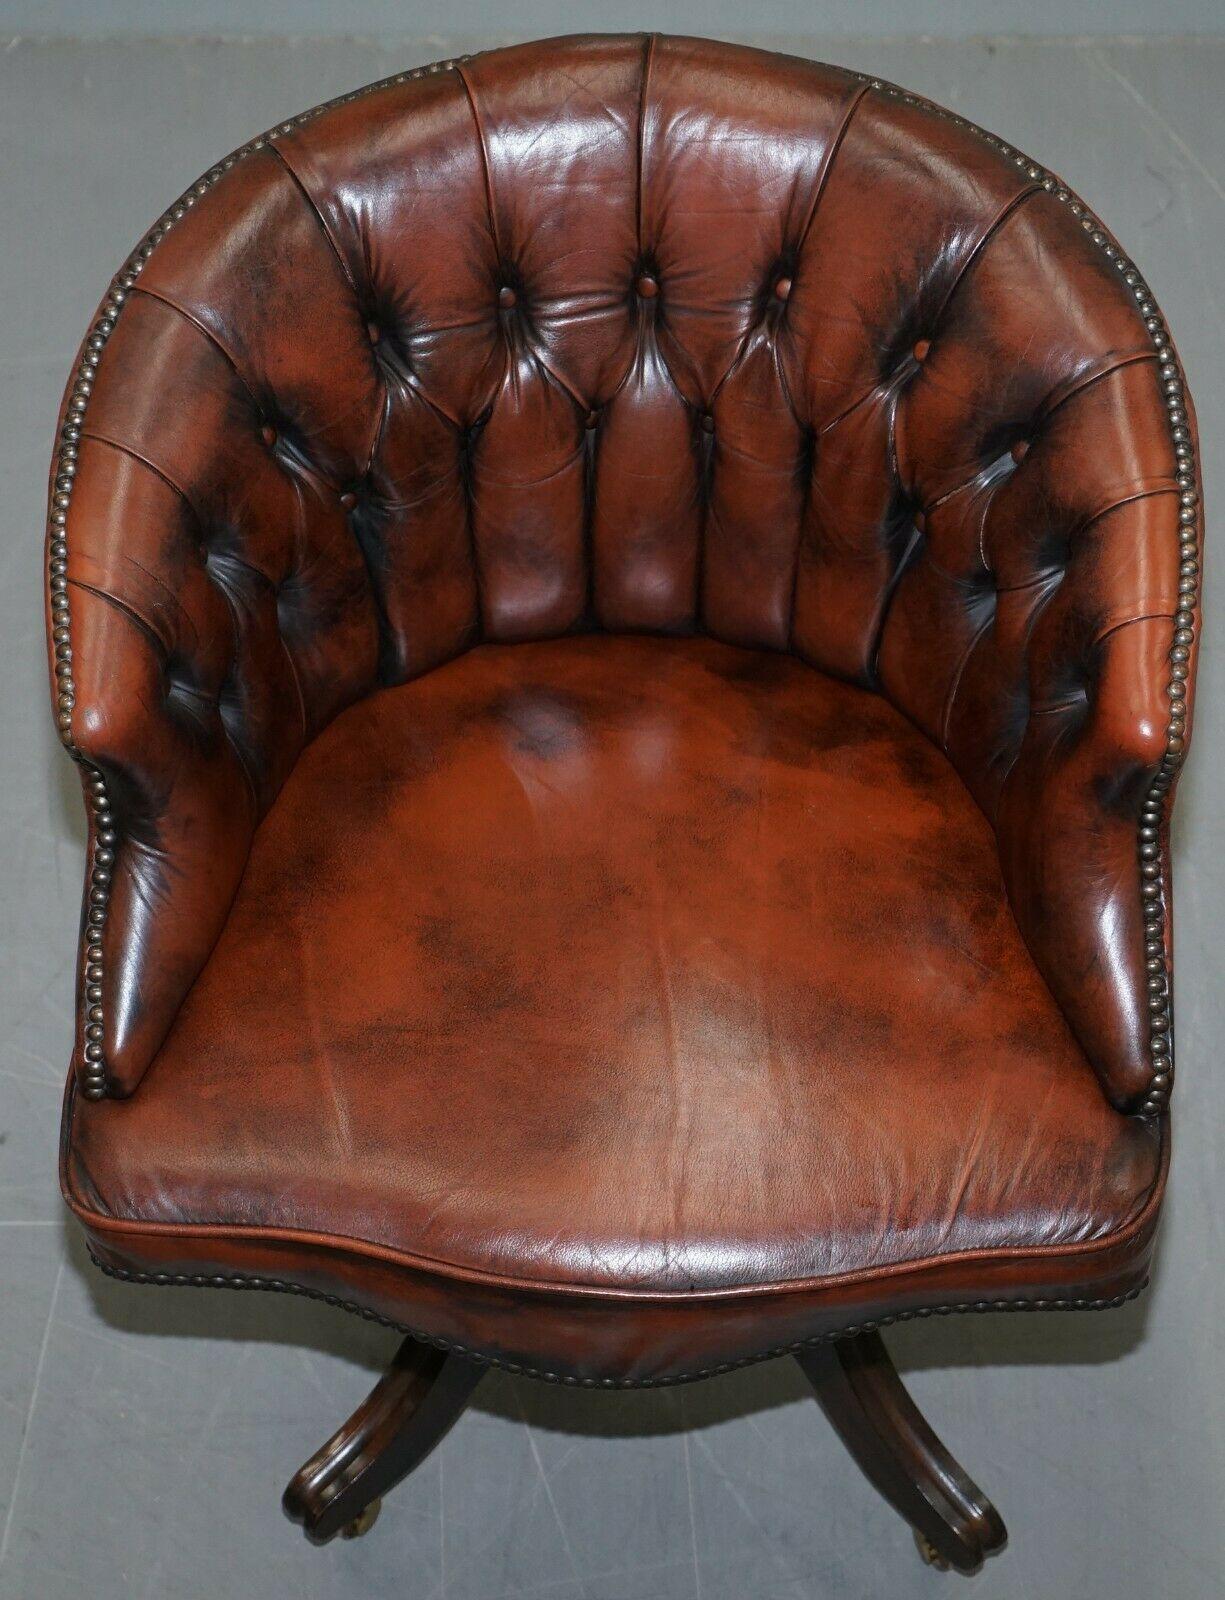 Wir freuen uns:: diese handgefertigt in England 1967 gestempelt Chesterfield Hand gefärbt braunem Leder gebogen zurück Kapitänsstuhl

Dieser Stuhl ist einer von einem Paar:: das andere ist unter meinen anderen Artikeln aufgeführt:: der einzige